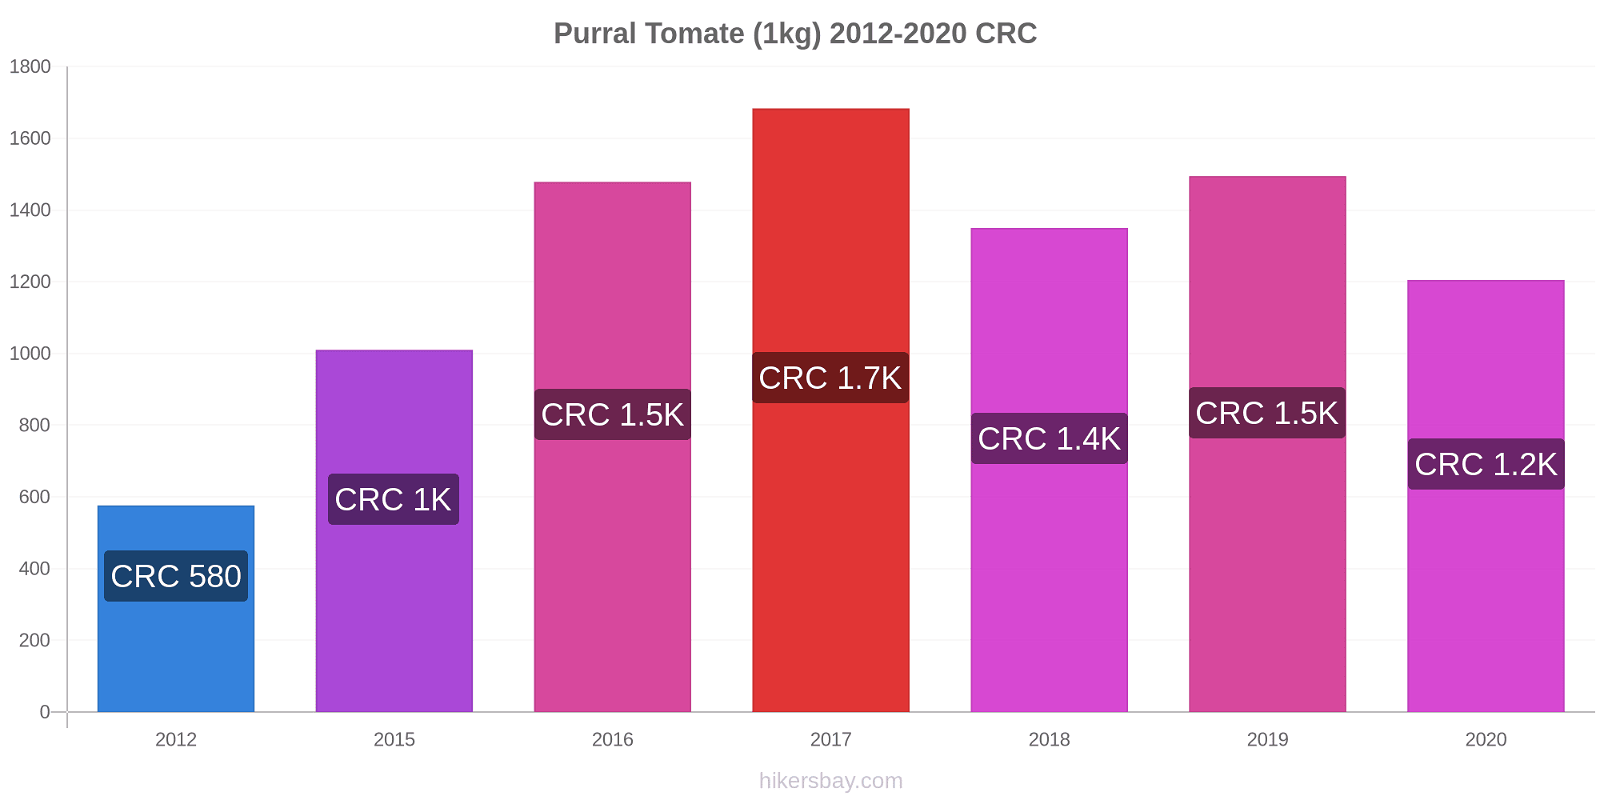 Purral changements de prix Tomate (1kg) hikersbay.com